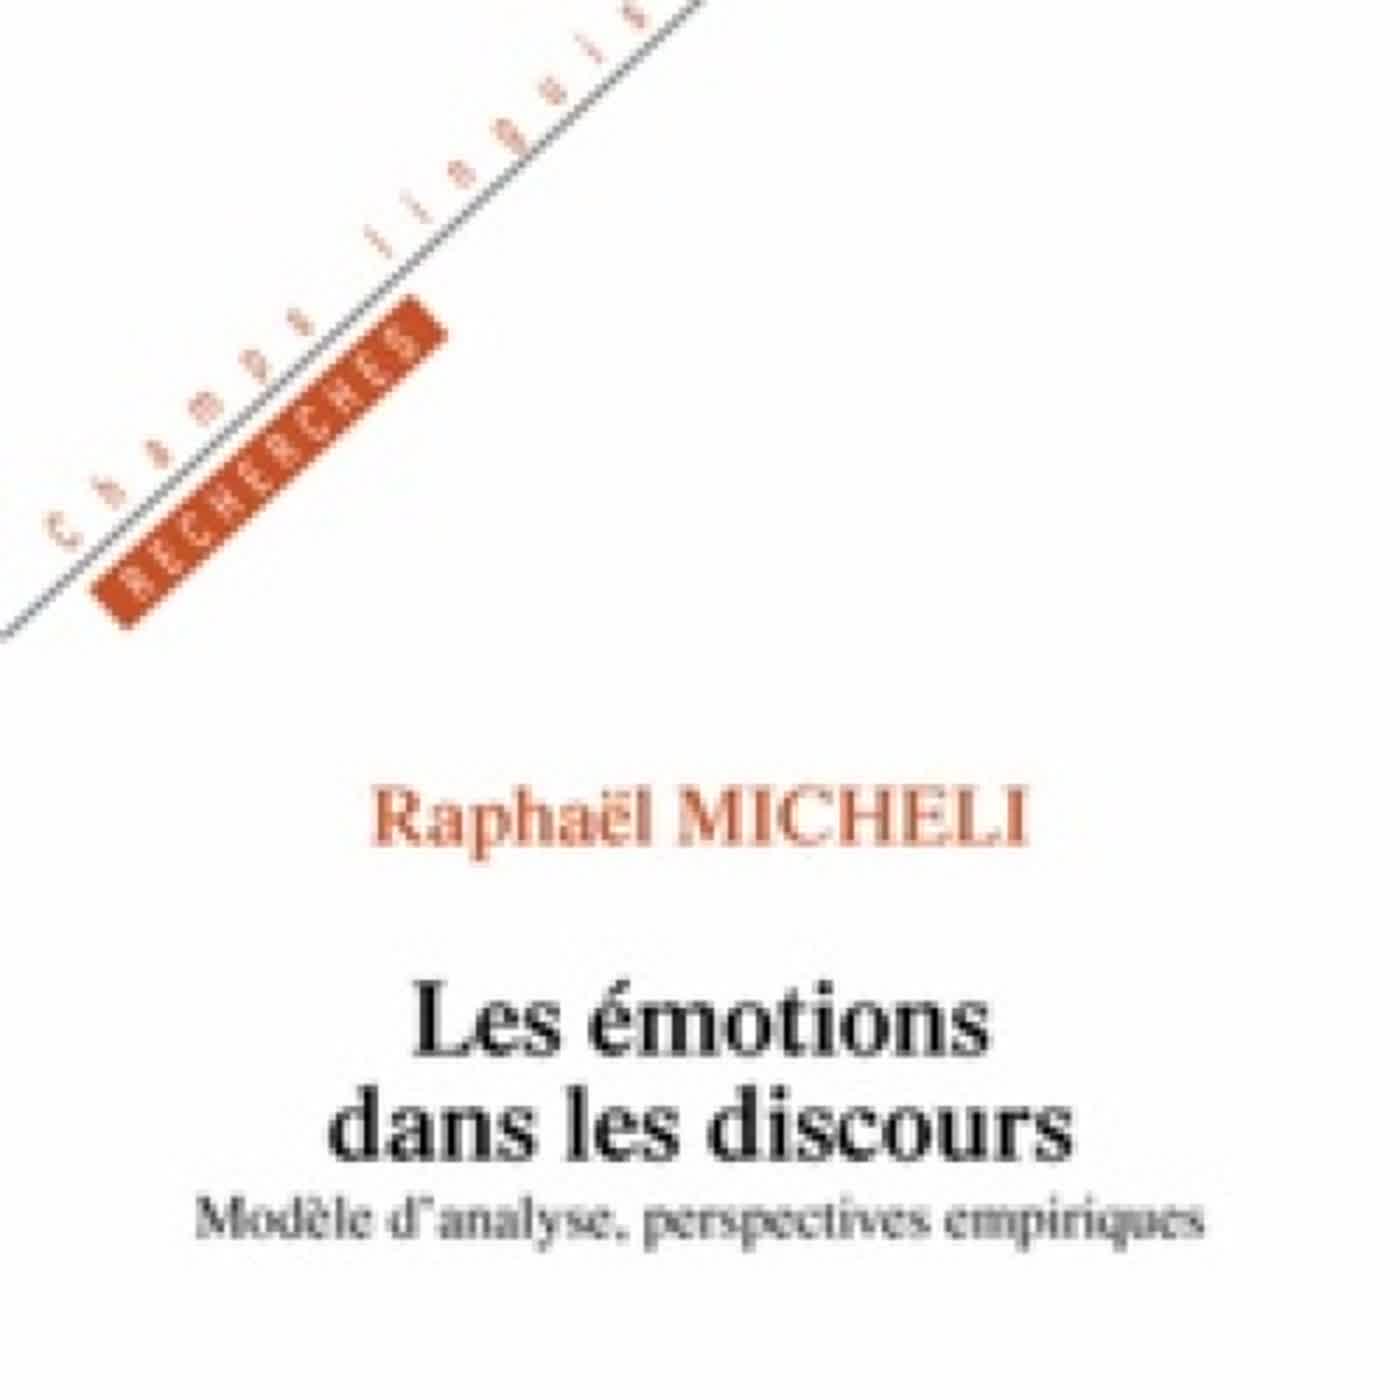 [PDF/Kindle] Les émotions dans les discours  - Modèle d'analyse, perspectives empiriques by Raphaël Micheli